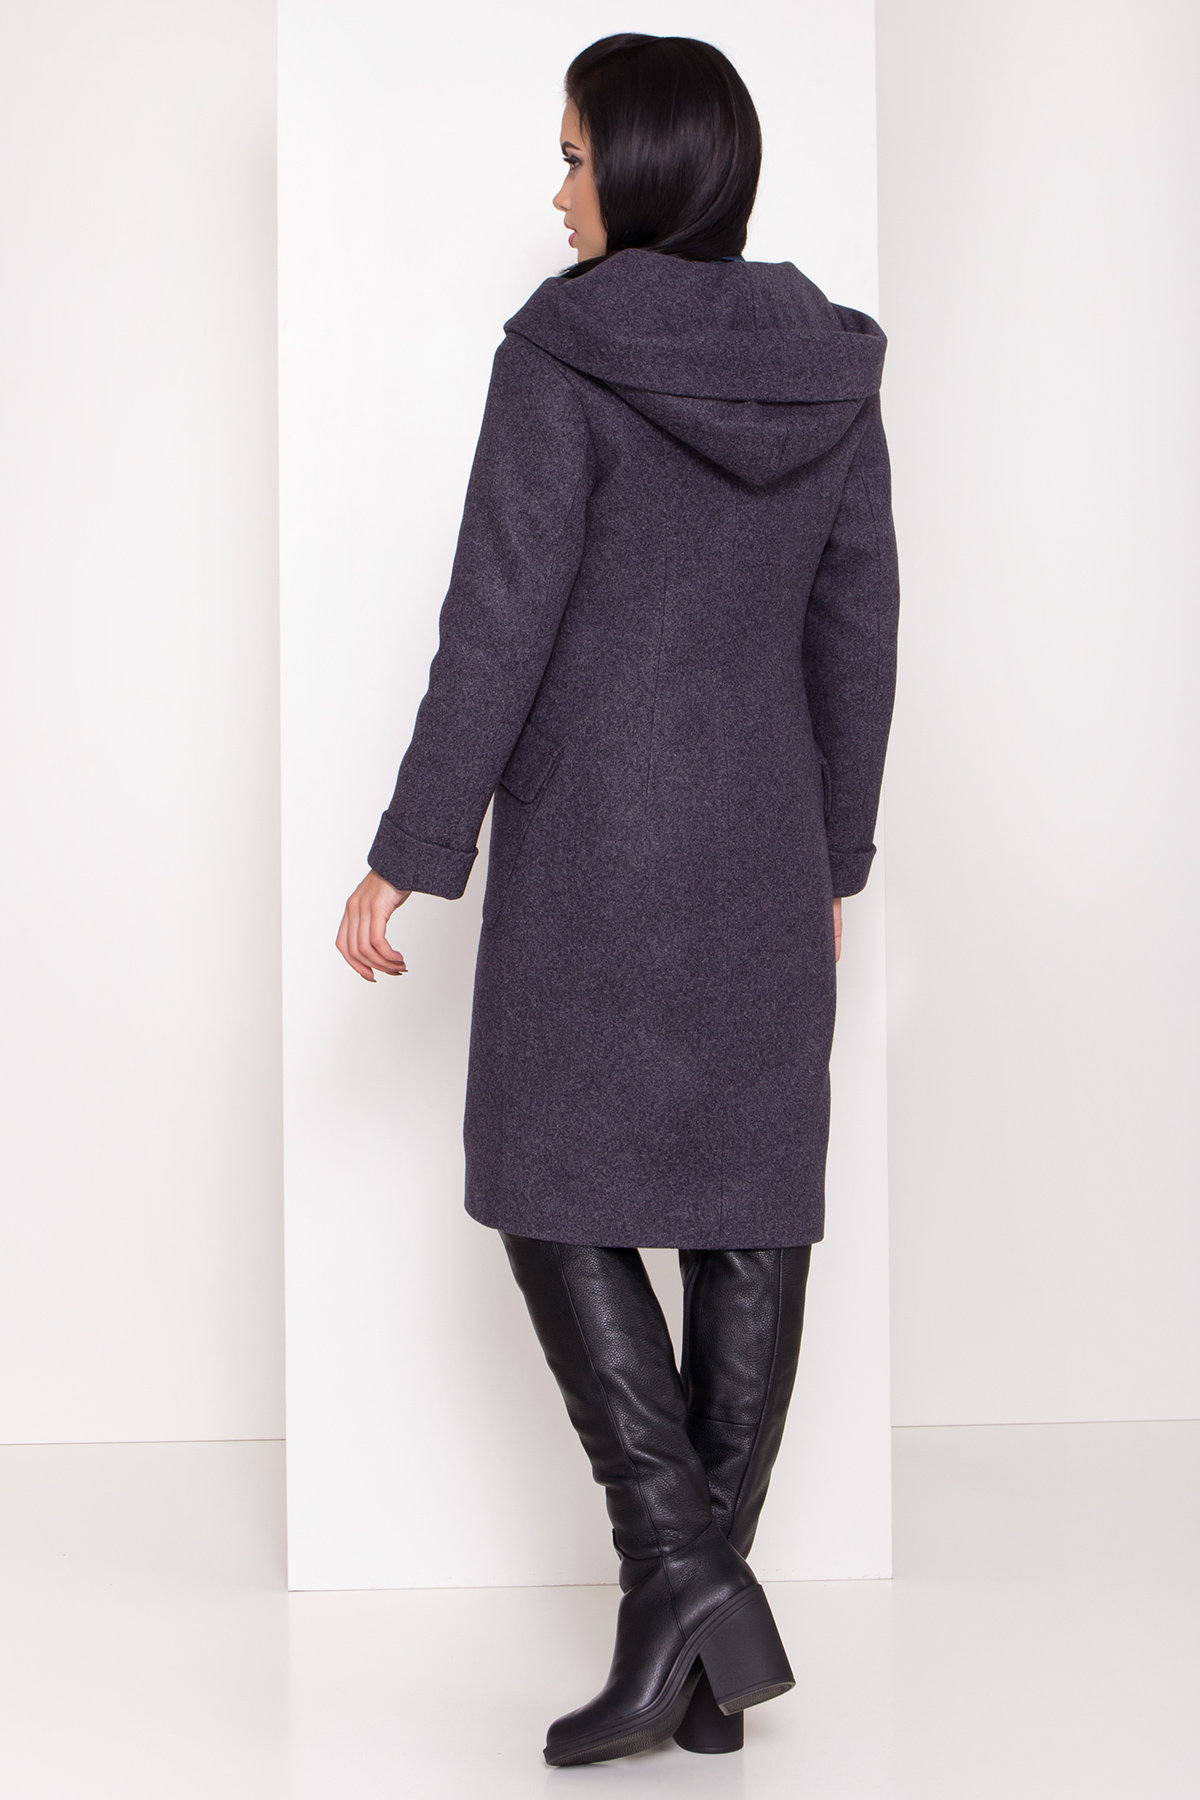 Женское пальто зима с накладными карманами Анджи 8301 АРТ. 44427 Цвет: т. синий 543 - фото 3, интернет магазин tm-modus.ru